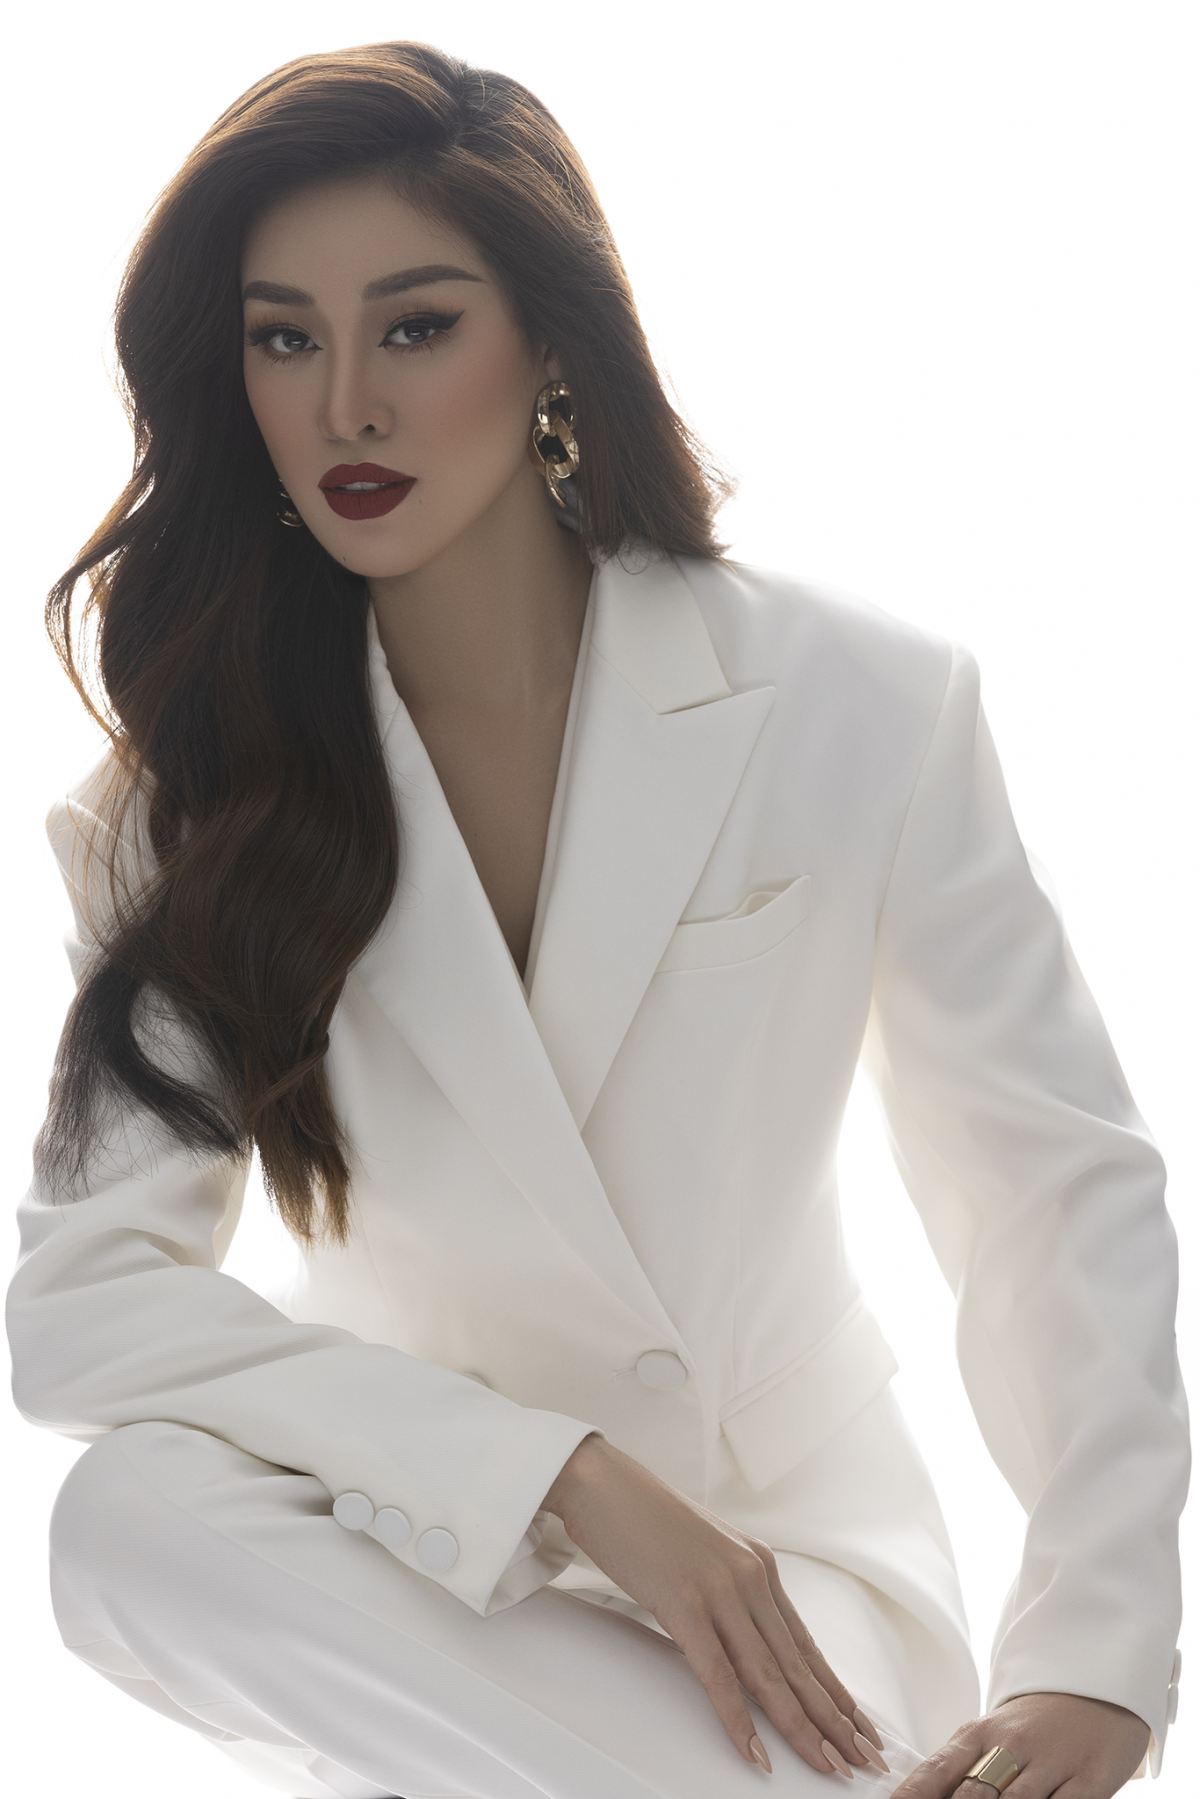 Hoa hậu Khánh Vân xây dựng hình ảnh nữ doanh nhân - Ảnh 9.